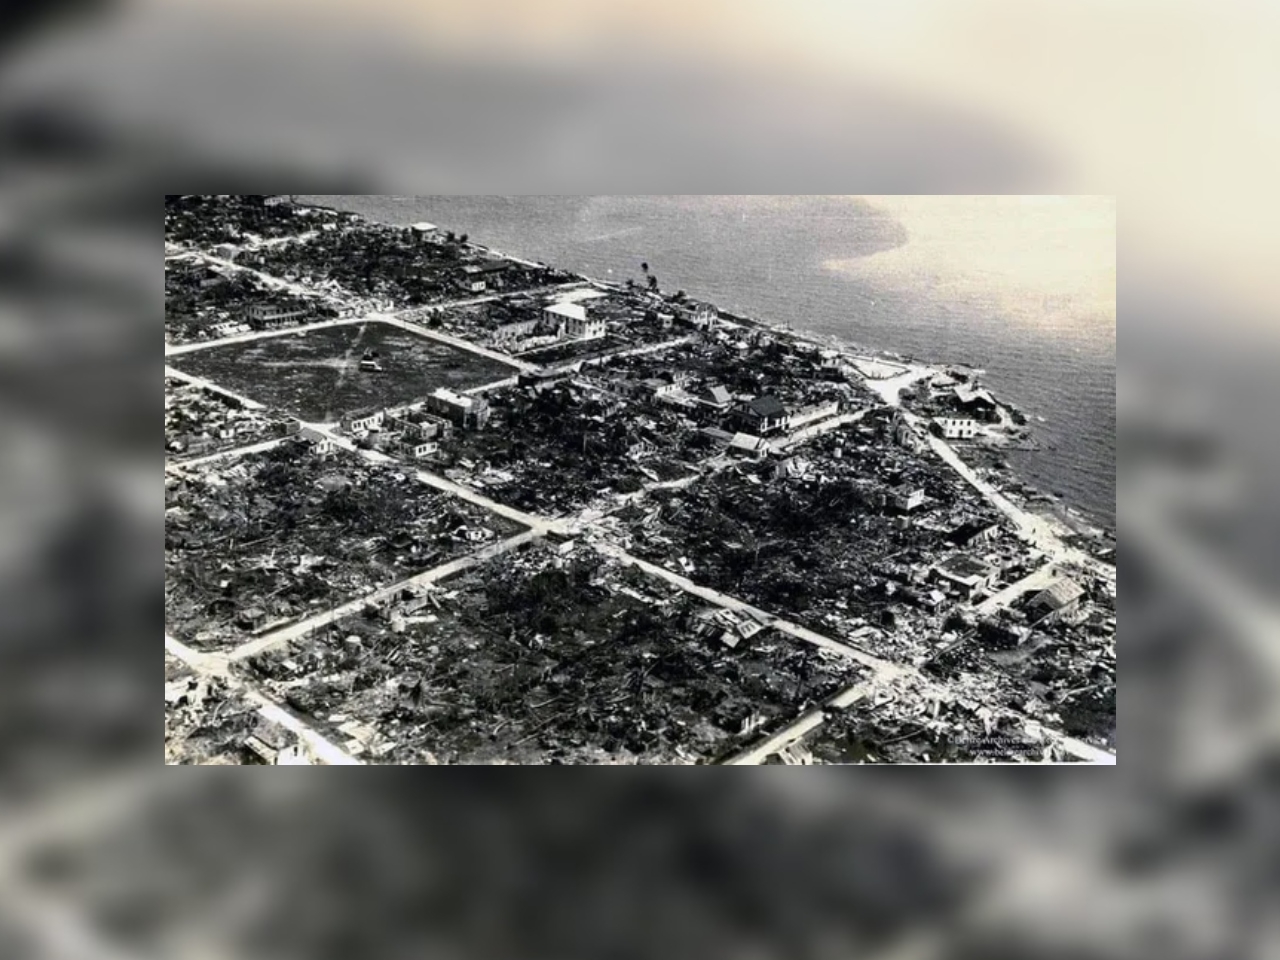 El Huracán Janet causó daños en Chetumal, debido a que tocó tierra quintanarroense como un Ciclón Categoría 5 en 1955